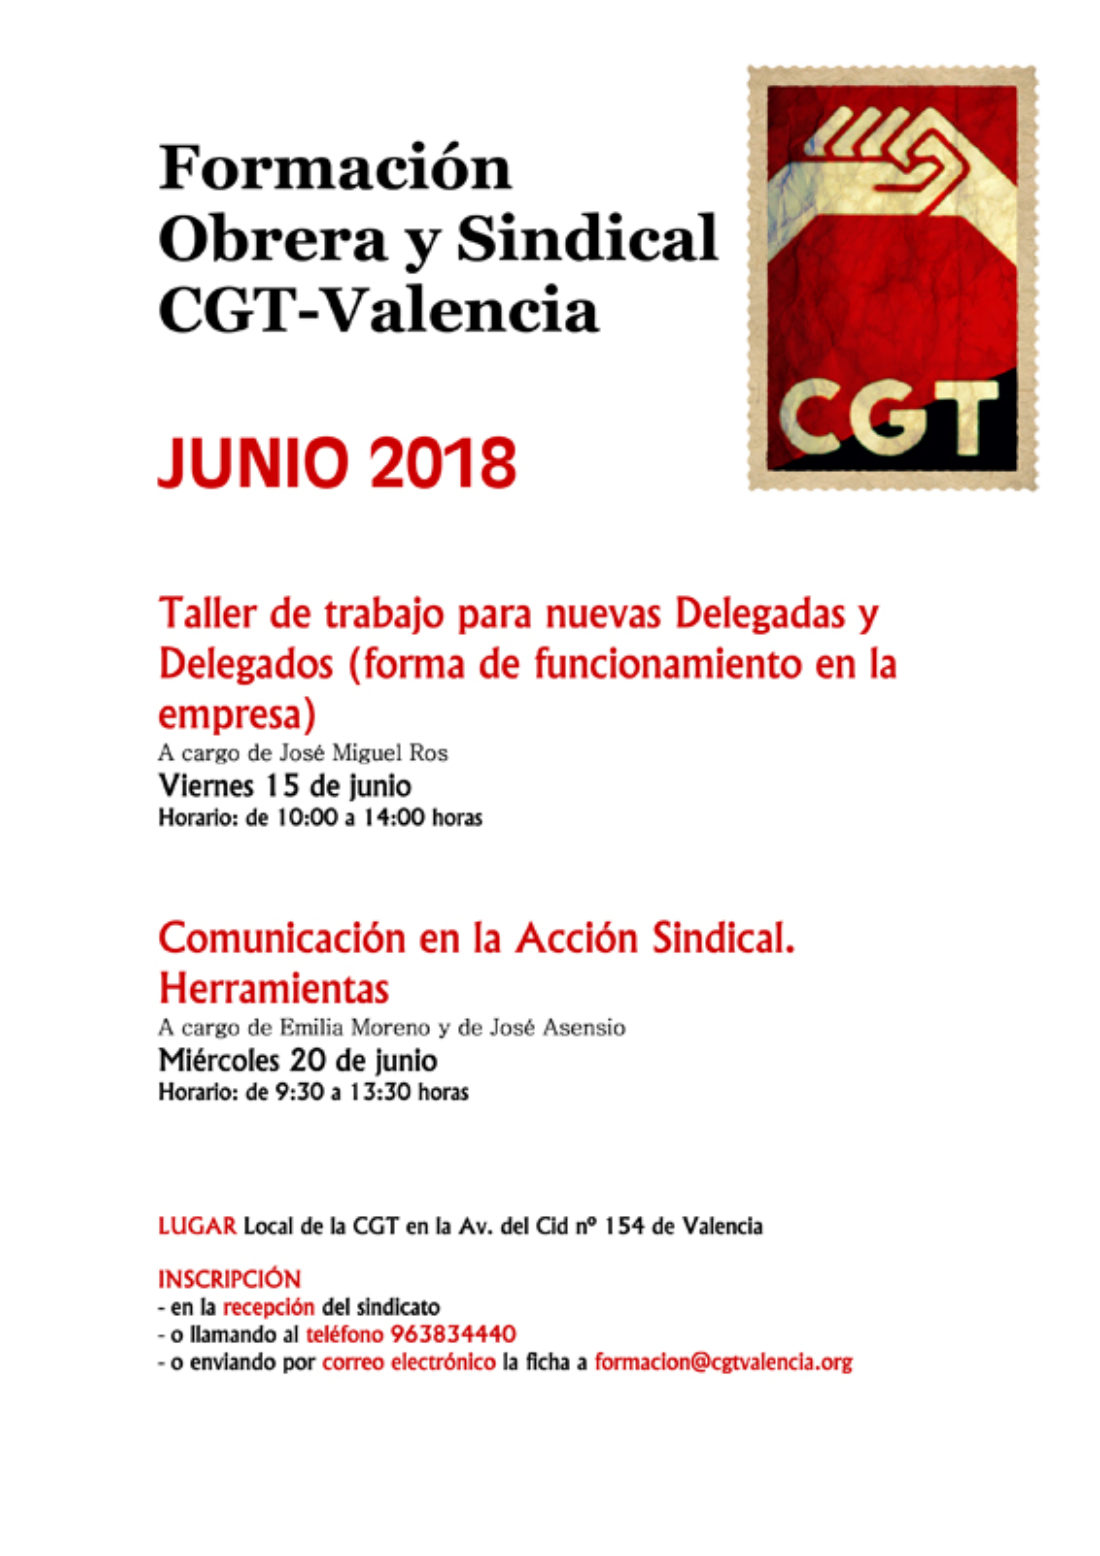 Acciones formativas de CGT-Valencia para junio 2018